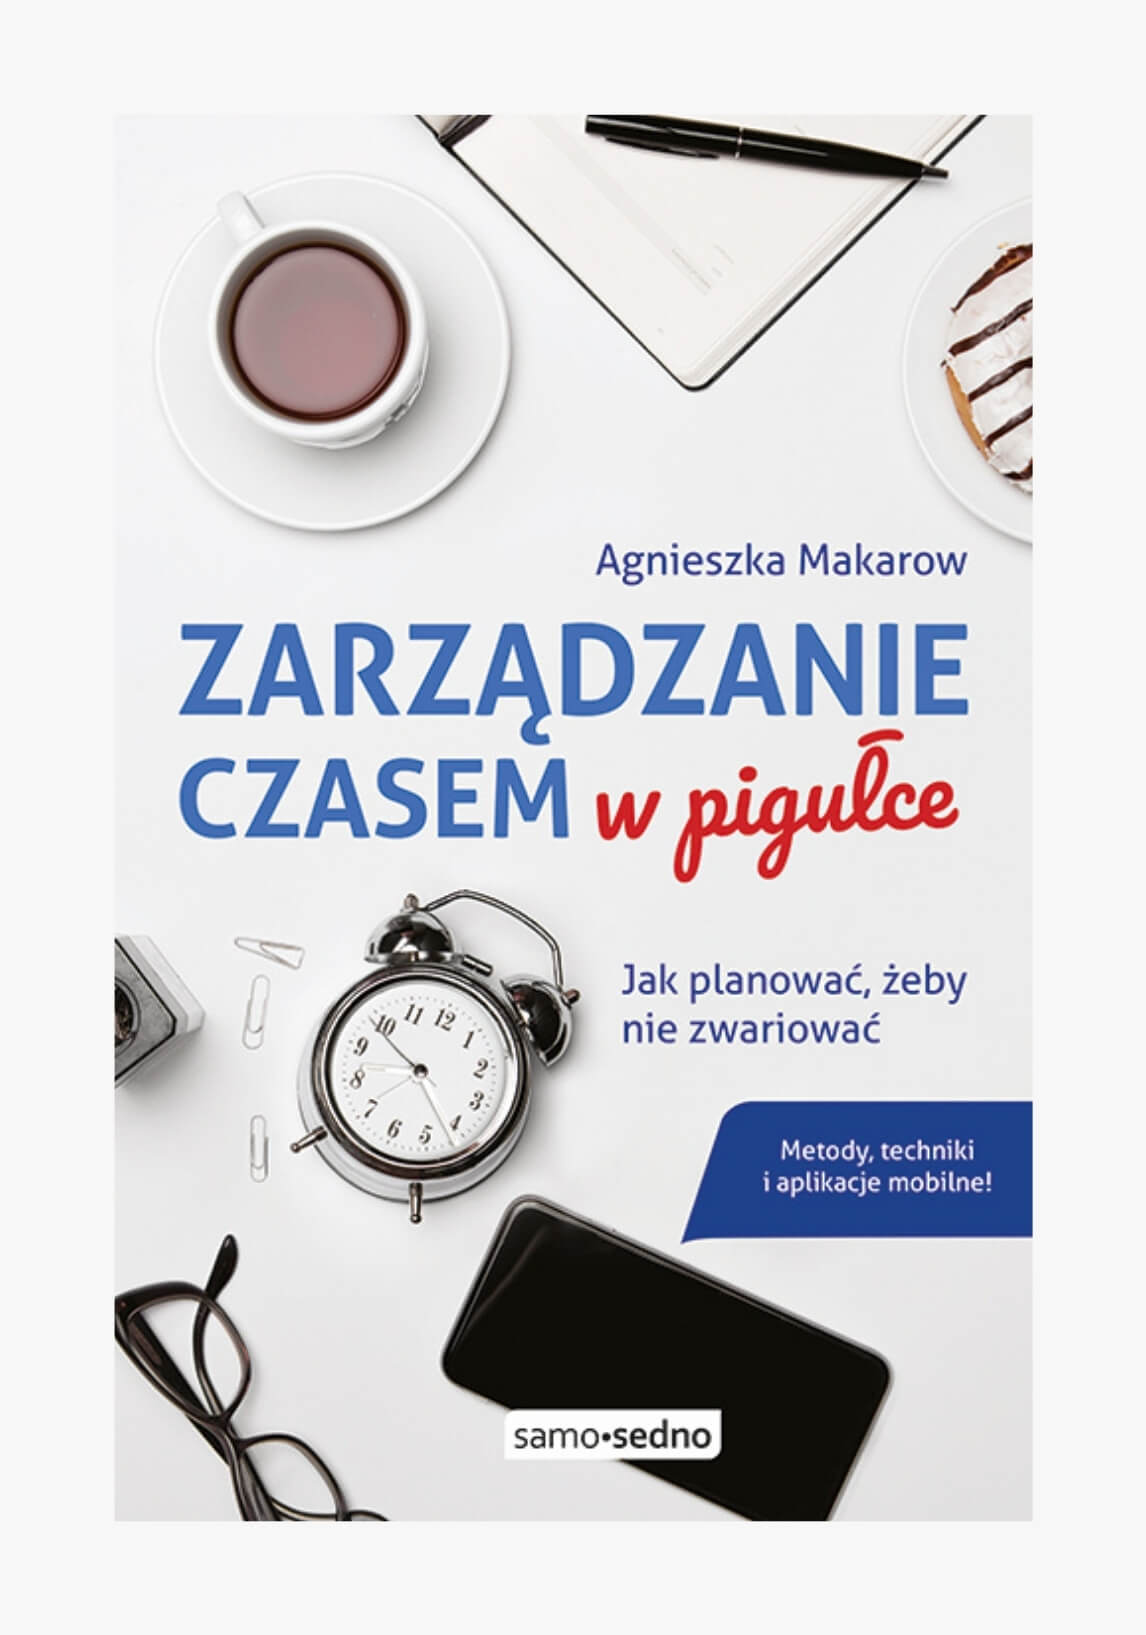 Zarządzanie czasem w pigułce - Agnieszka Makarow - Wyd. Samo sedno